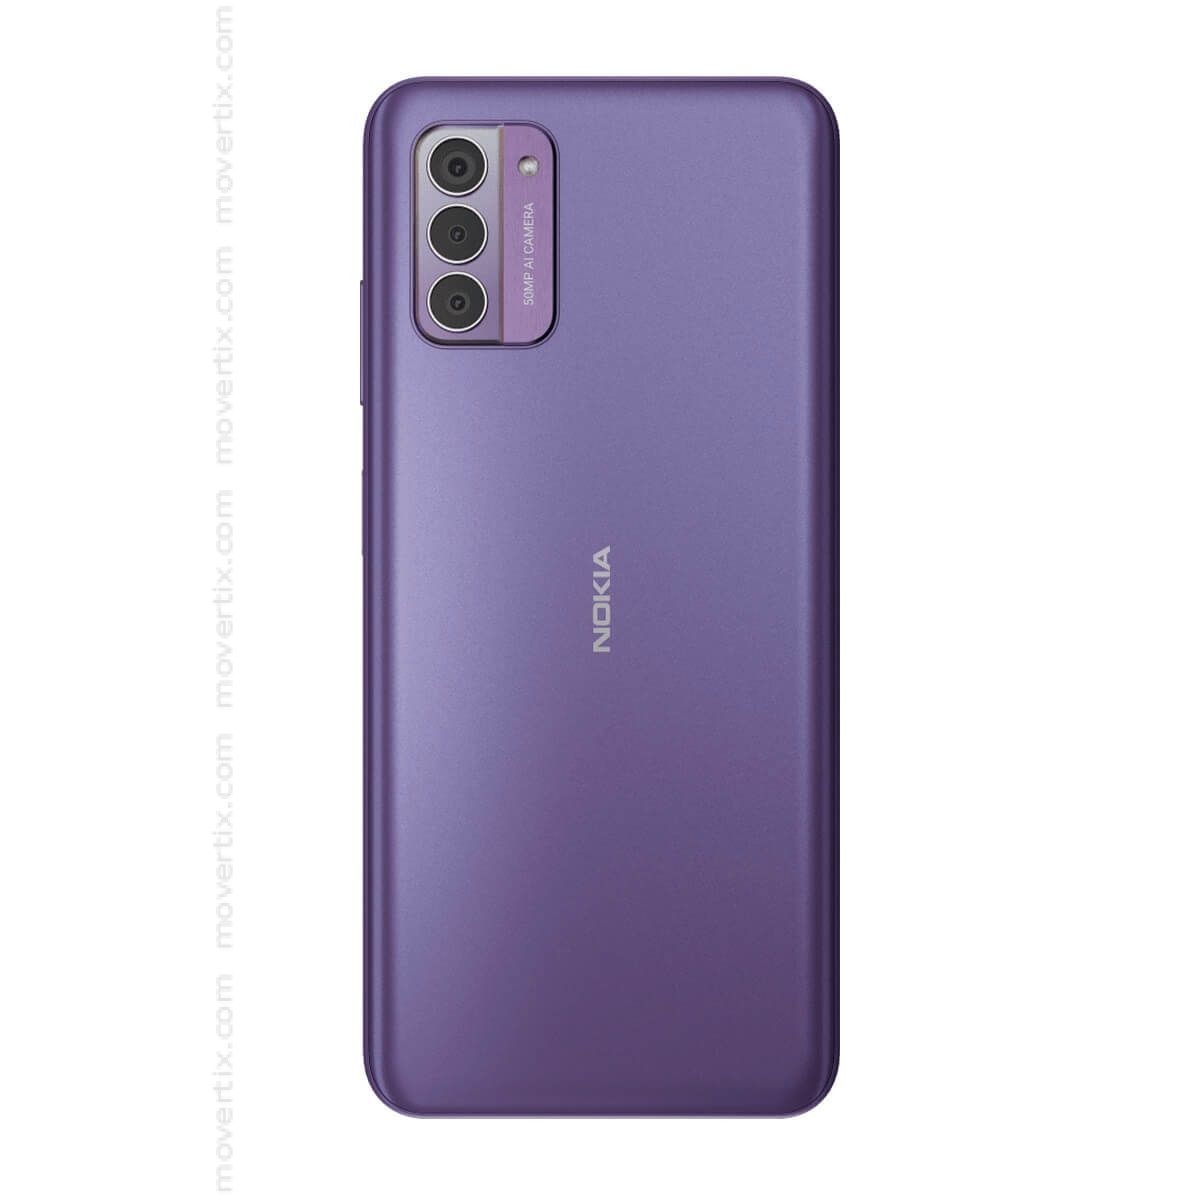 Nokia G42 5G Dual SIM in Lila mit 128GB und 6GB RAM - TA-1581  (6438409088208) | Movertix Handy Shop | alle Smartphones